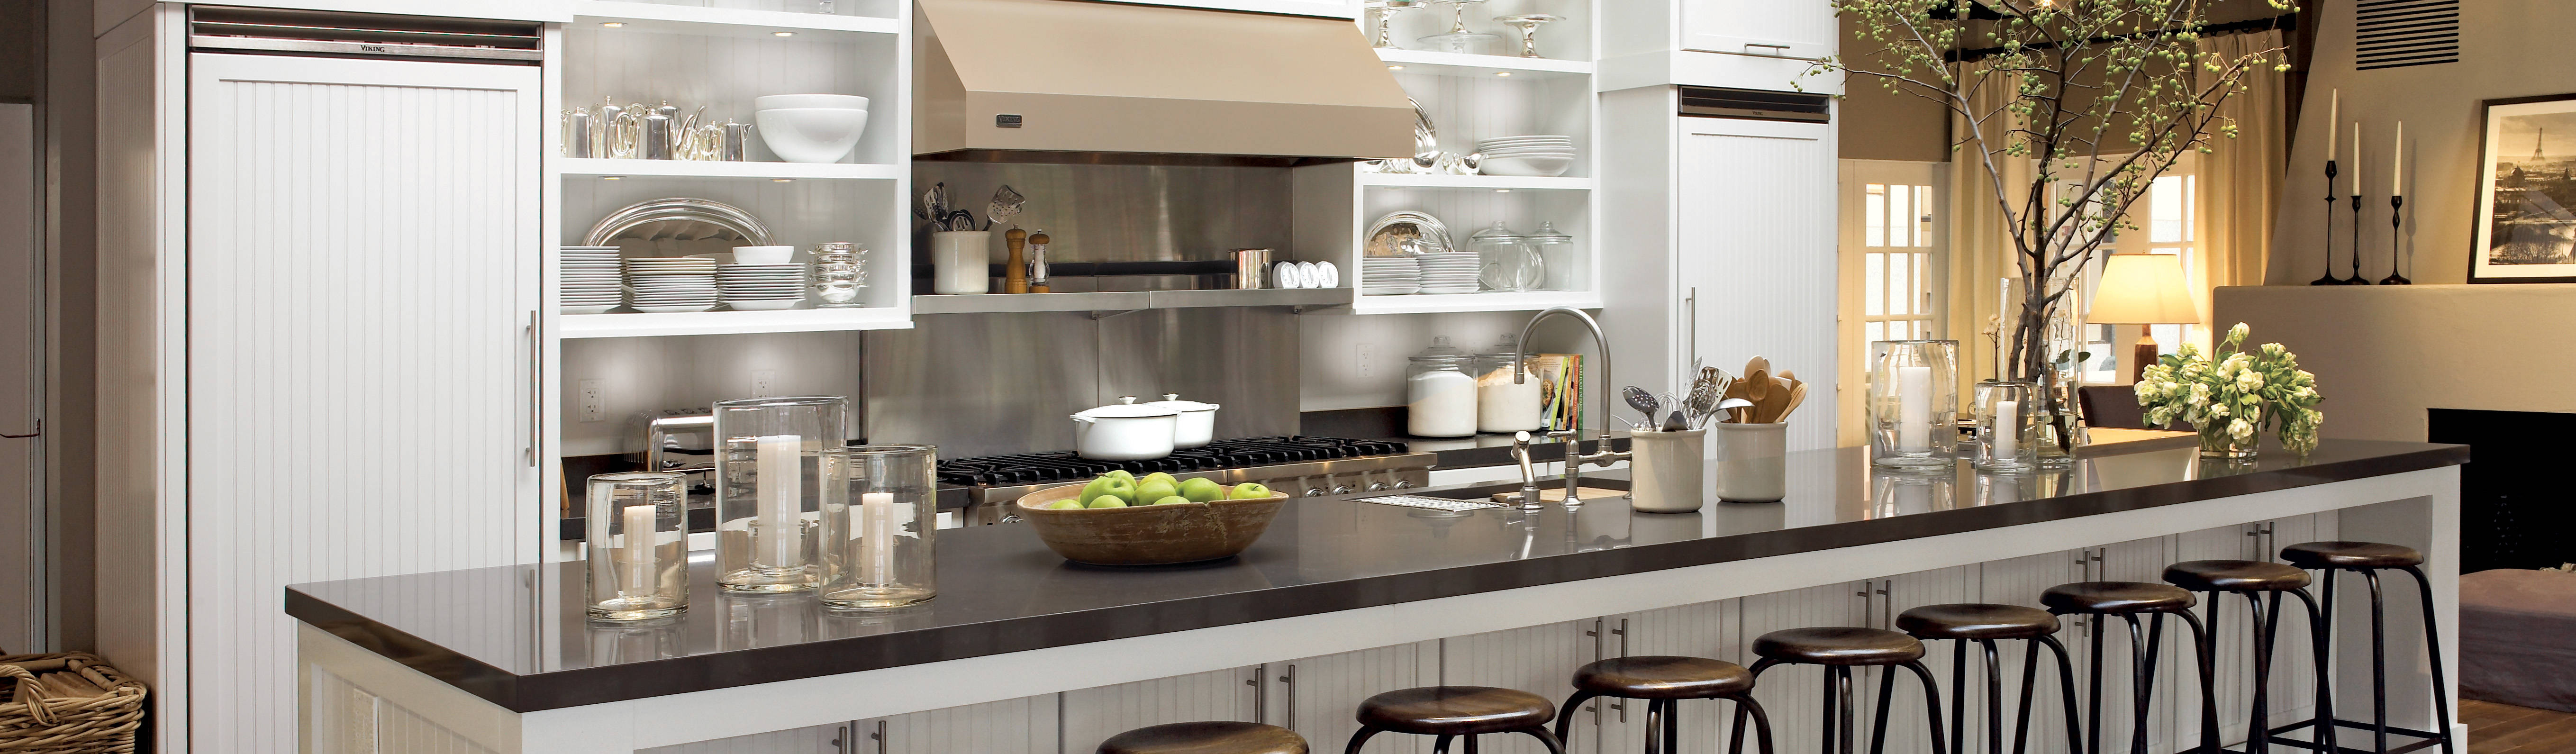 Kitchen Krafter Design/Remodel Showroom